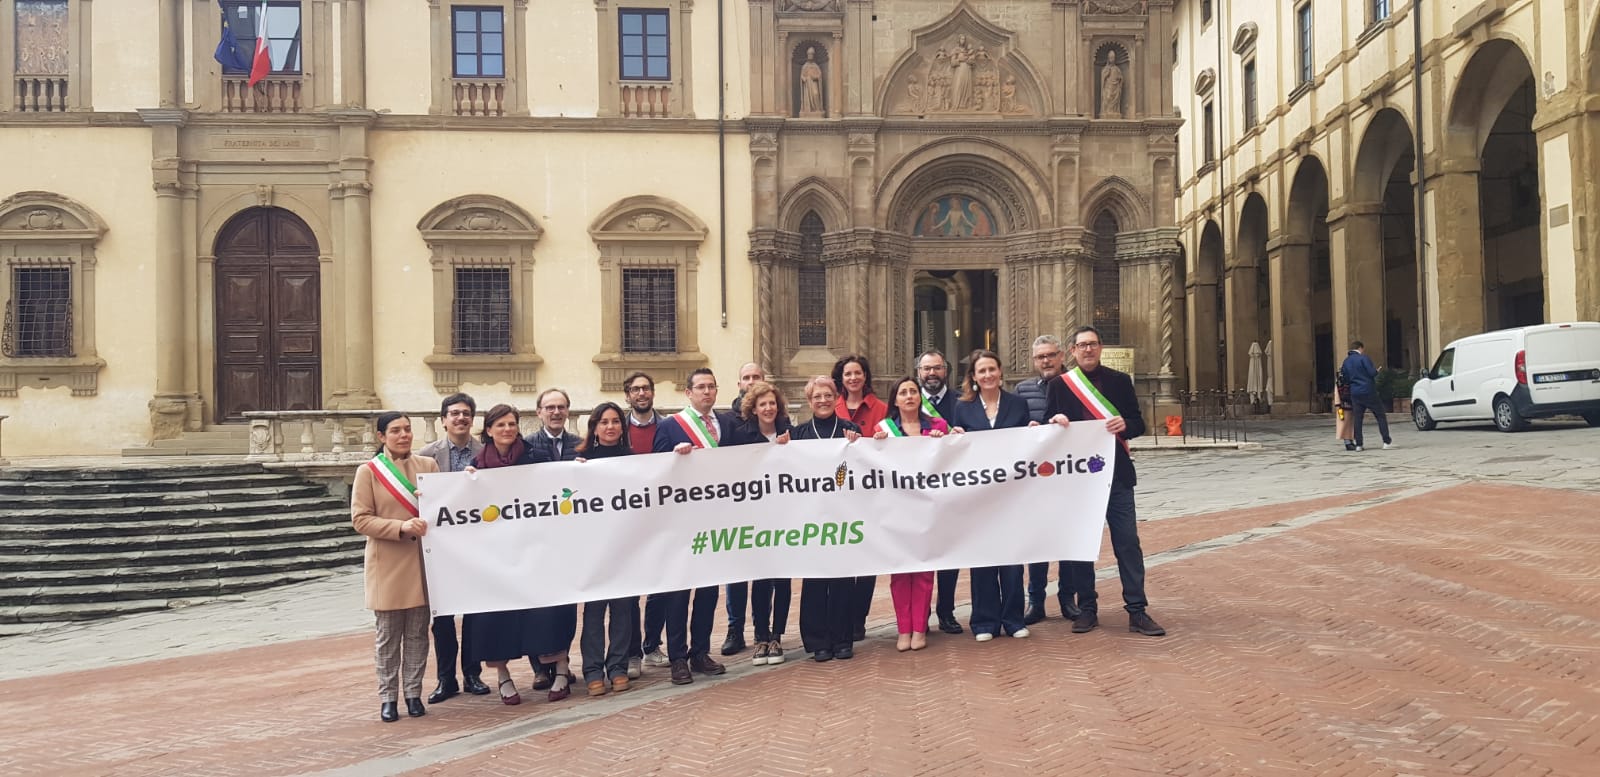 Firmata ad Arezzo la costituzione dellâ€™Associazione dei Paesaggi Rurali di Interesse Storico (PRIS): il Parco di Pantelleria entra nel gruppo dei 25 siti riconosciuti